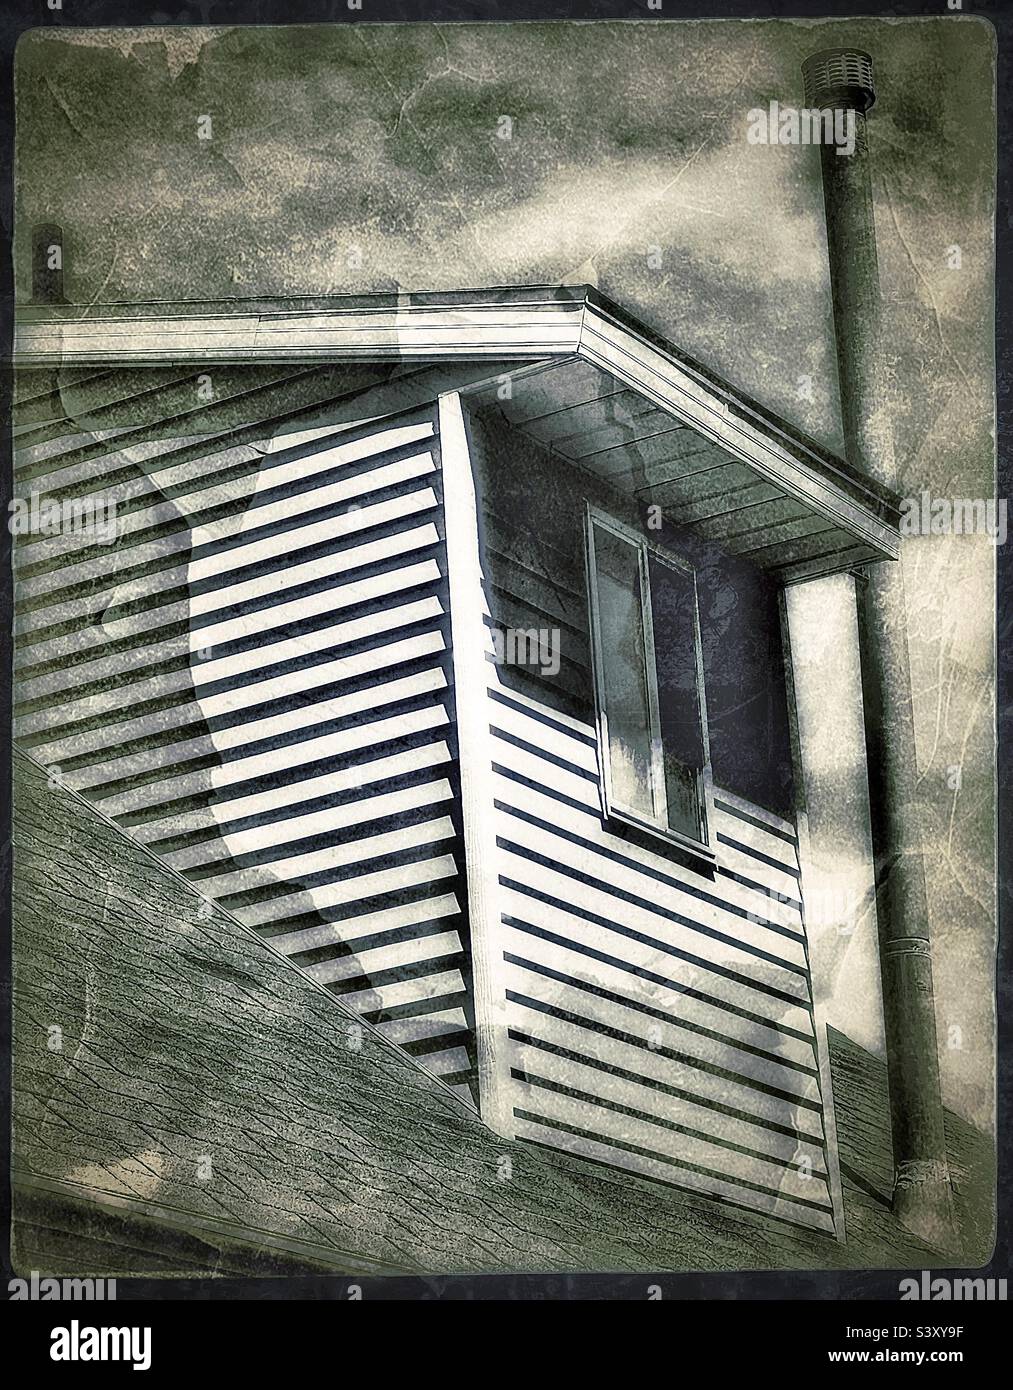 Rückseite eines Hauses im Cape Cod-Stil, mit Dachfenstern, erbaut Mitte der 1980er Jahre. Dies ist ein Familienhaus in Utah, USA. Das Bild alterte und verwitterte digital, was ein bereits älteres Zuhause mehr erscheinen lässt. Stockfoto